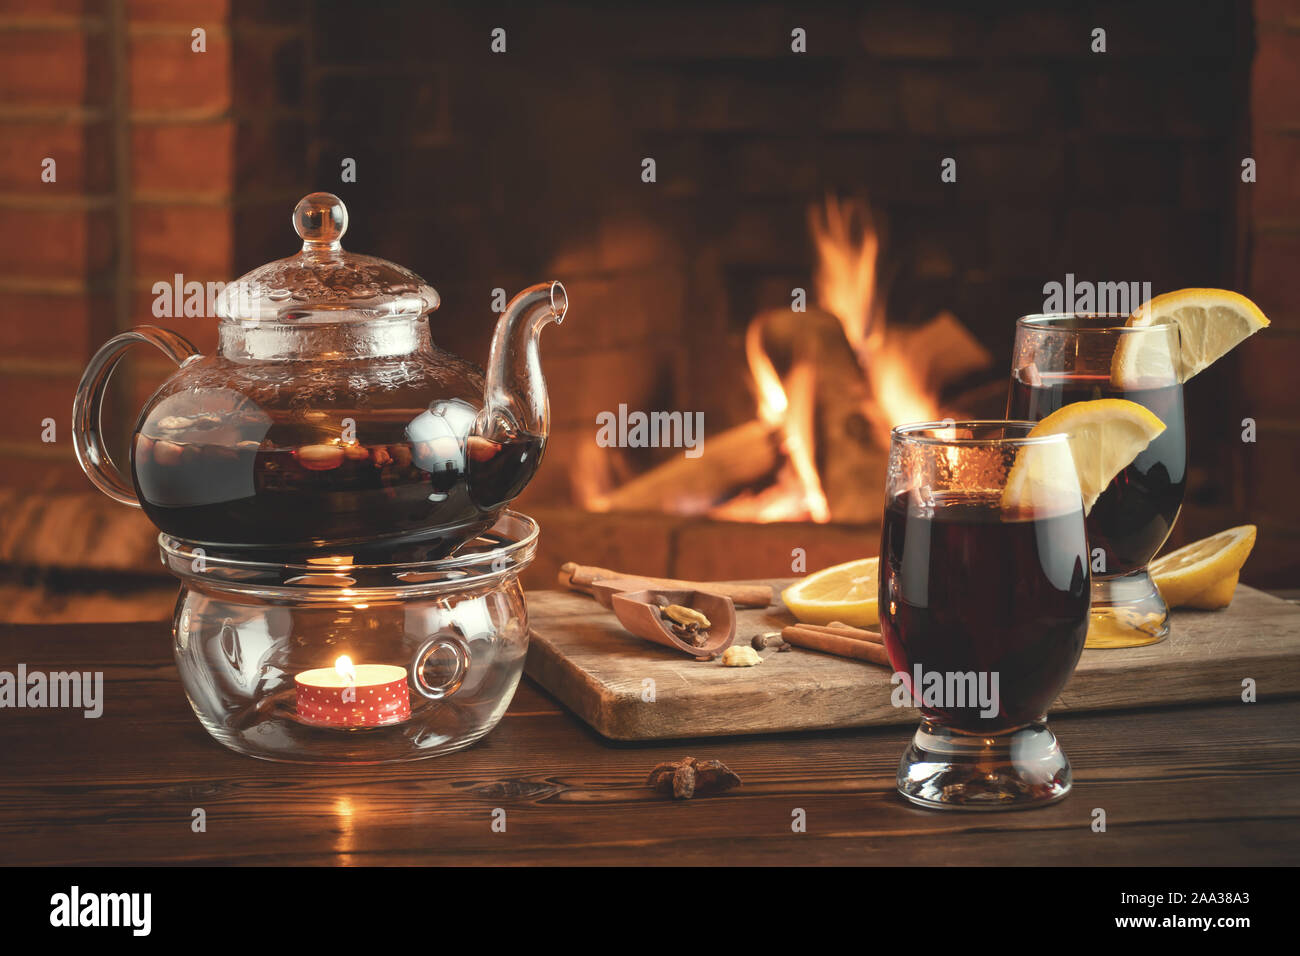 Zwei Gläser von Glühwein und Teekanne auf einem holztisch vor einem brennenden Kamin. Stockfoto